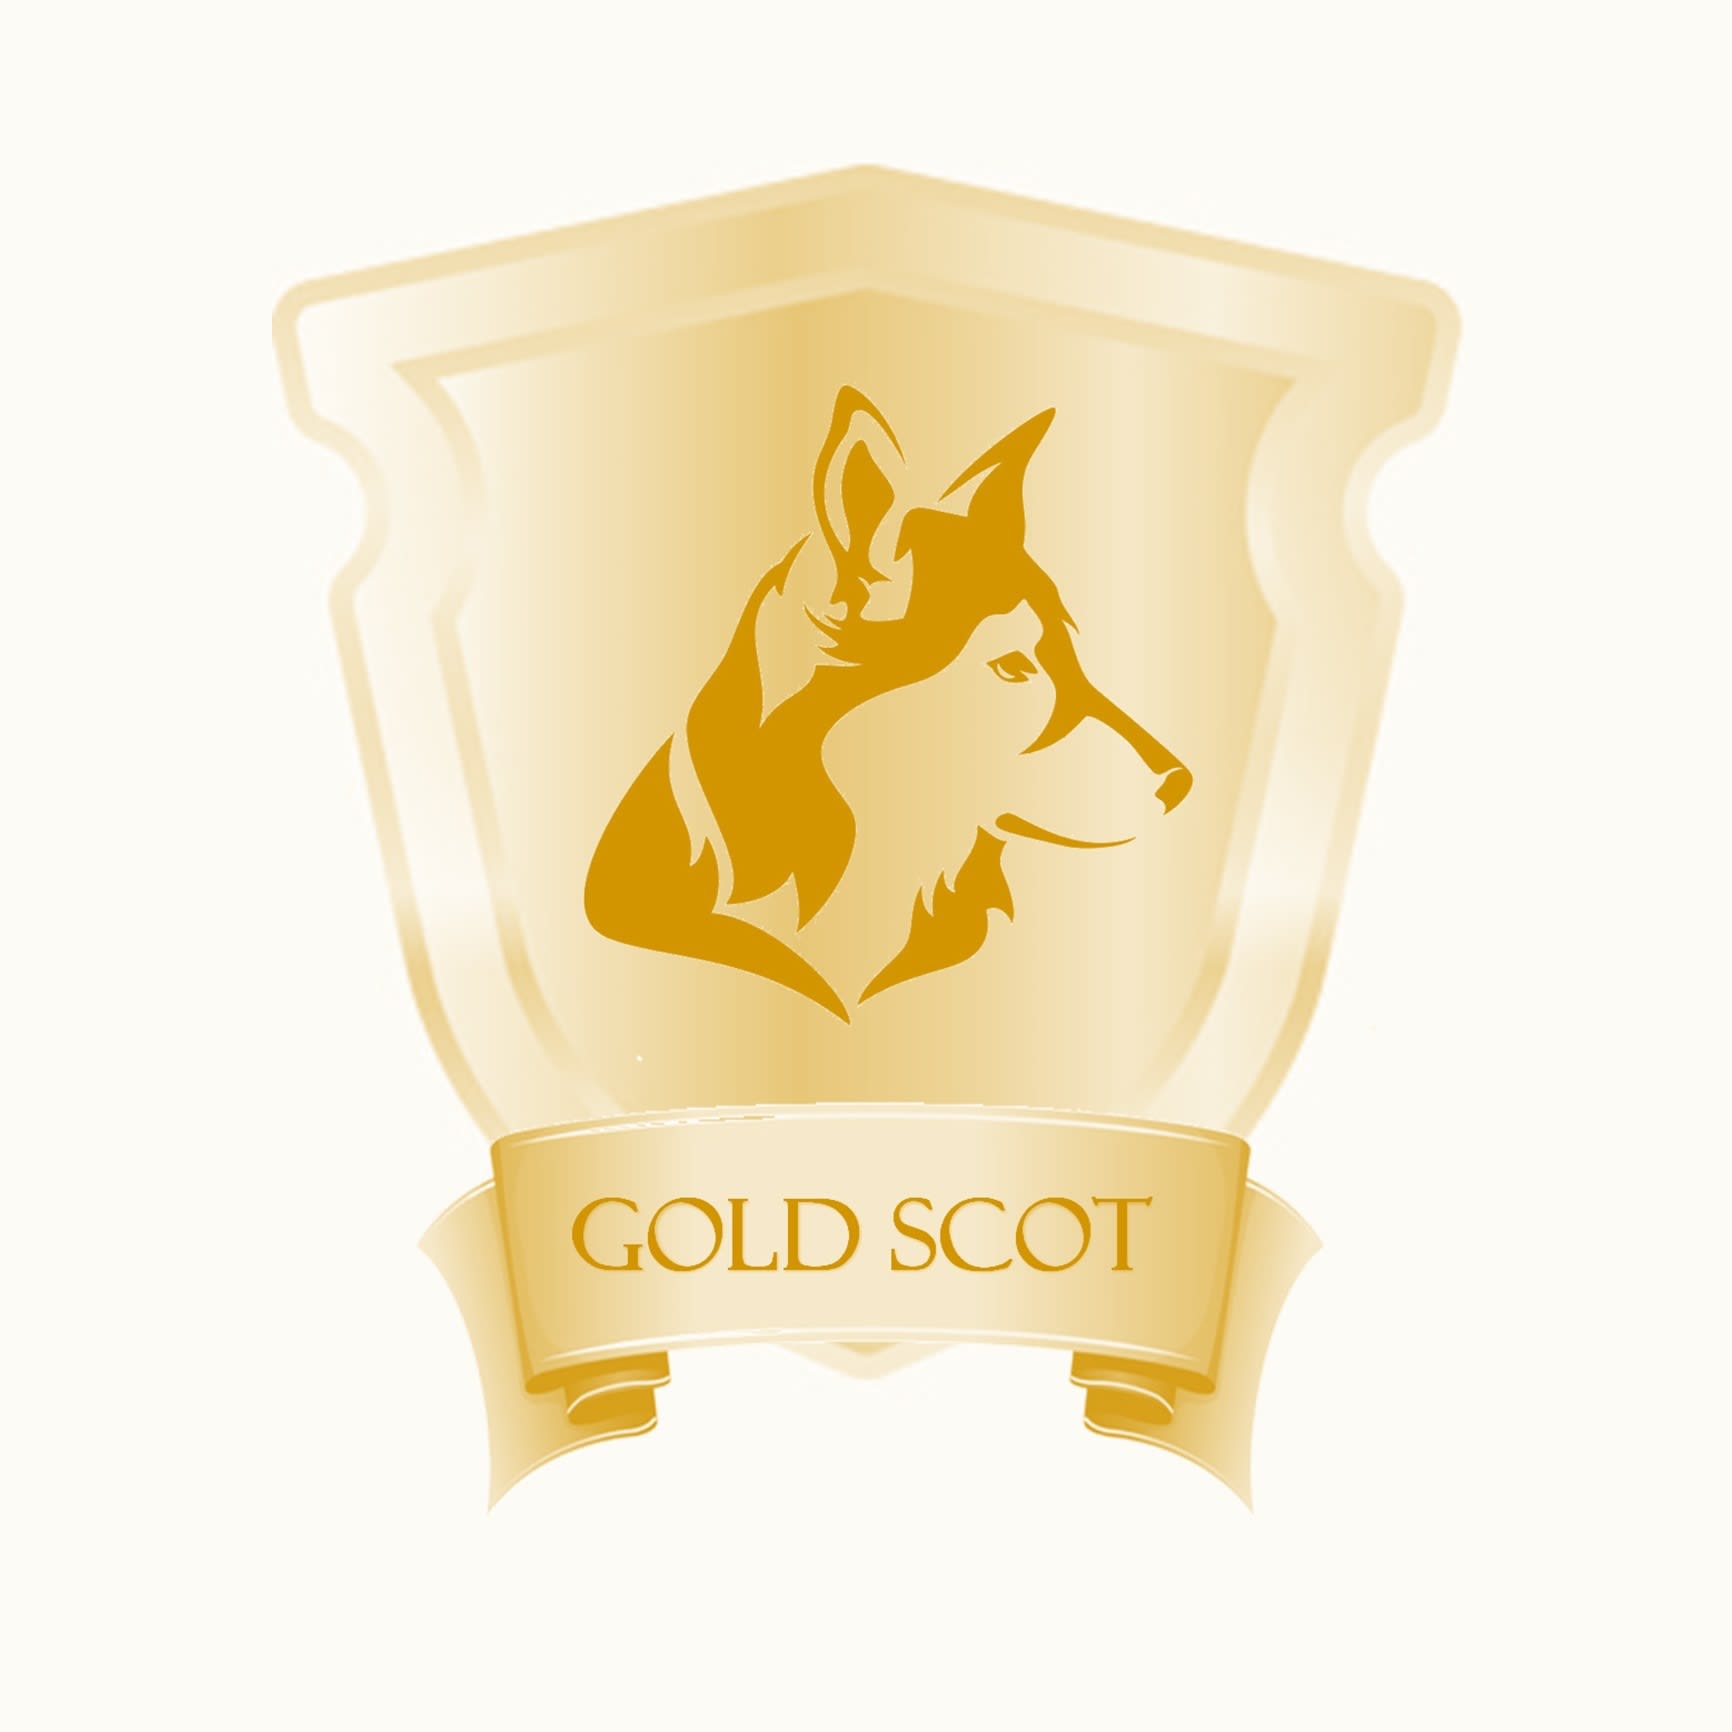 Gold Scot